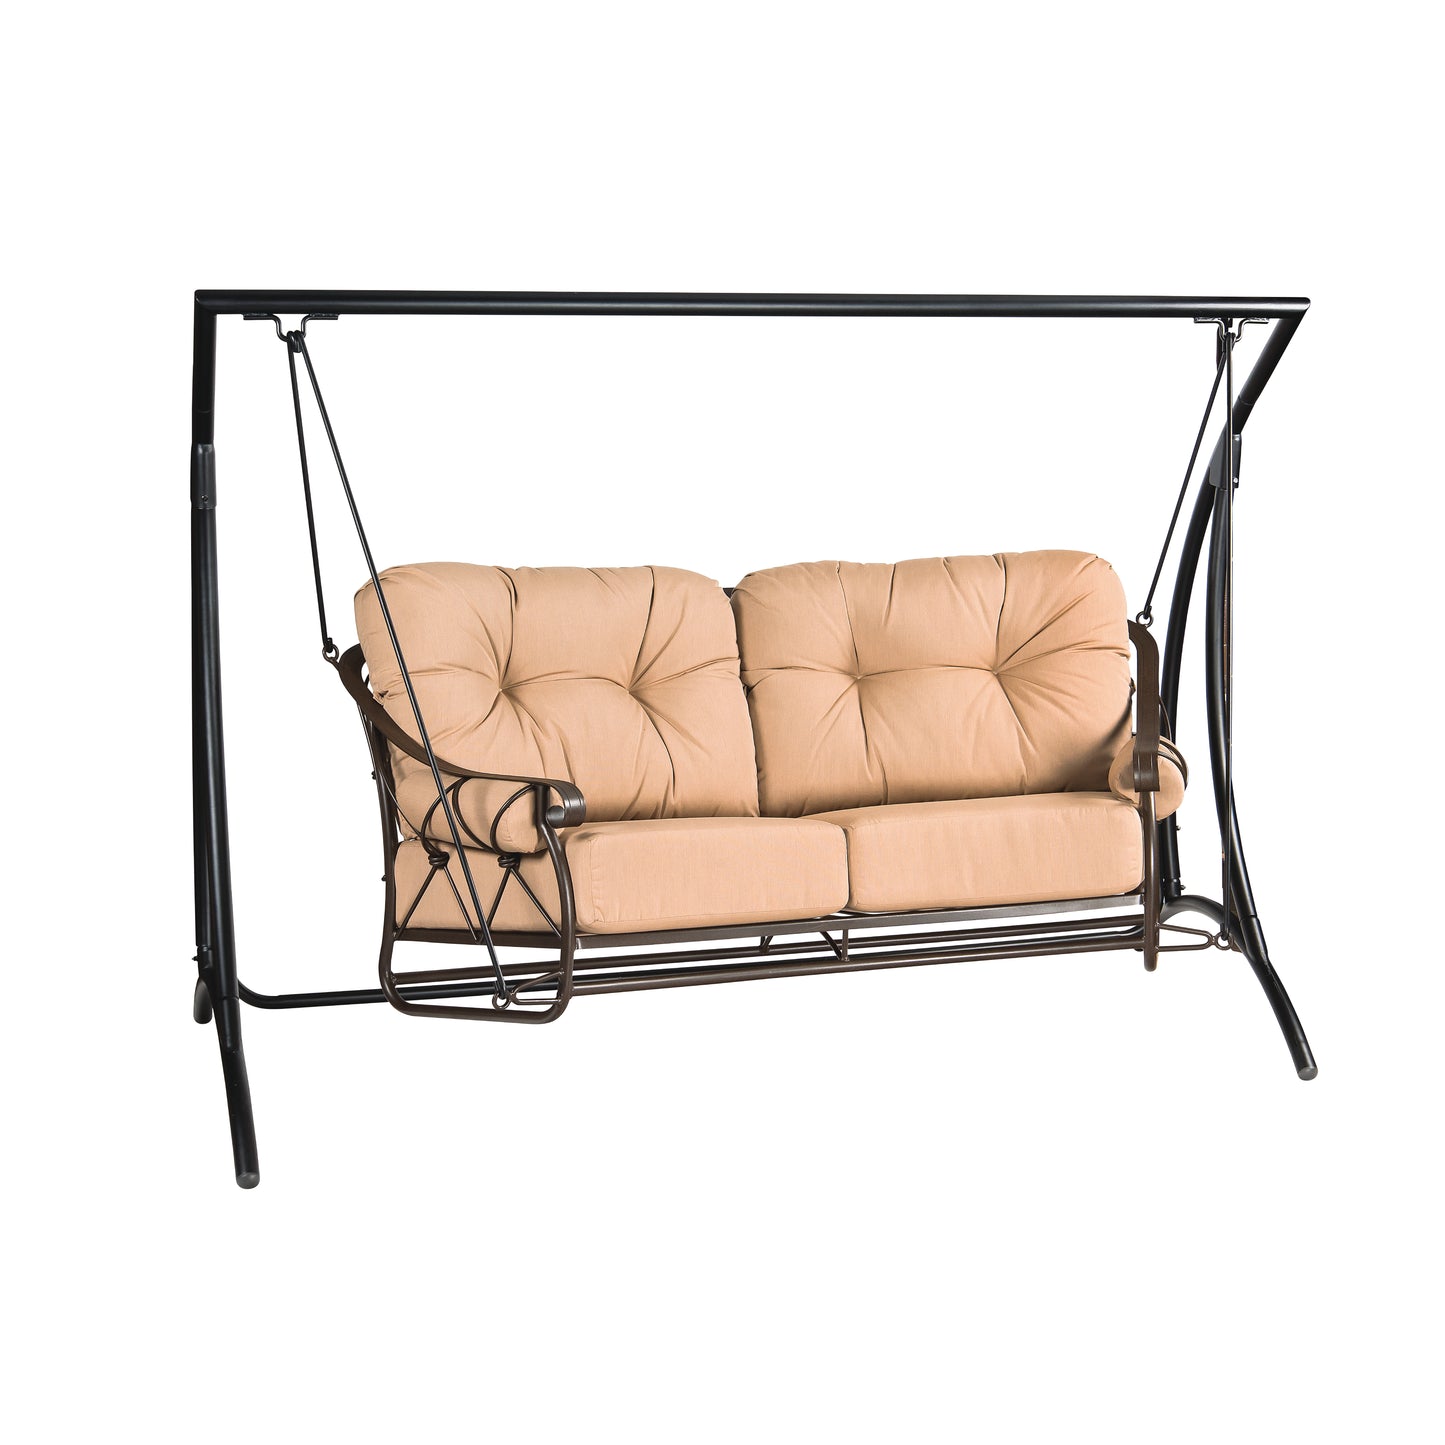 Woodard Derby Cushion Swing & Stand 4T0179 + STD179 - Textured Black / Michelangelo Toast